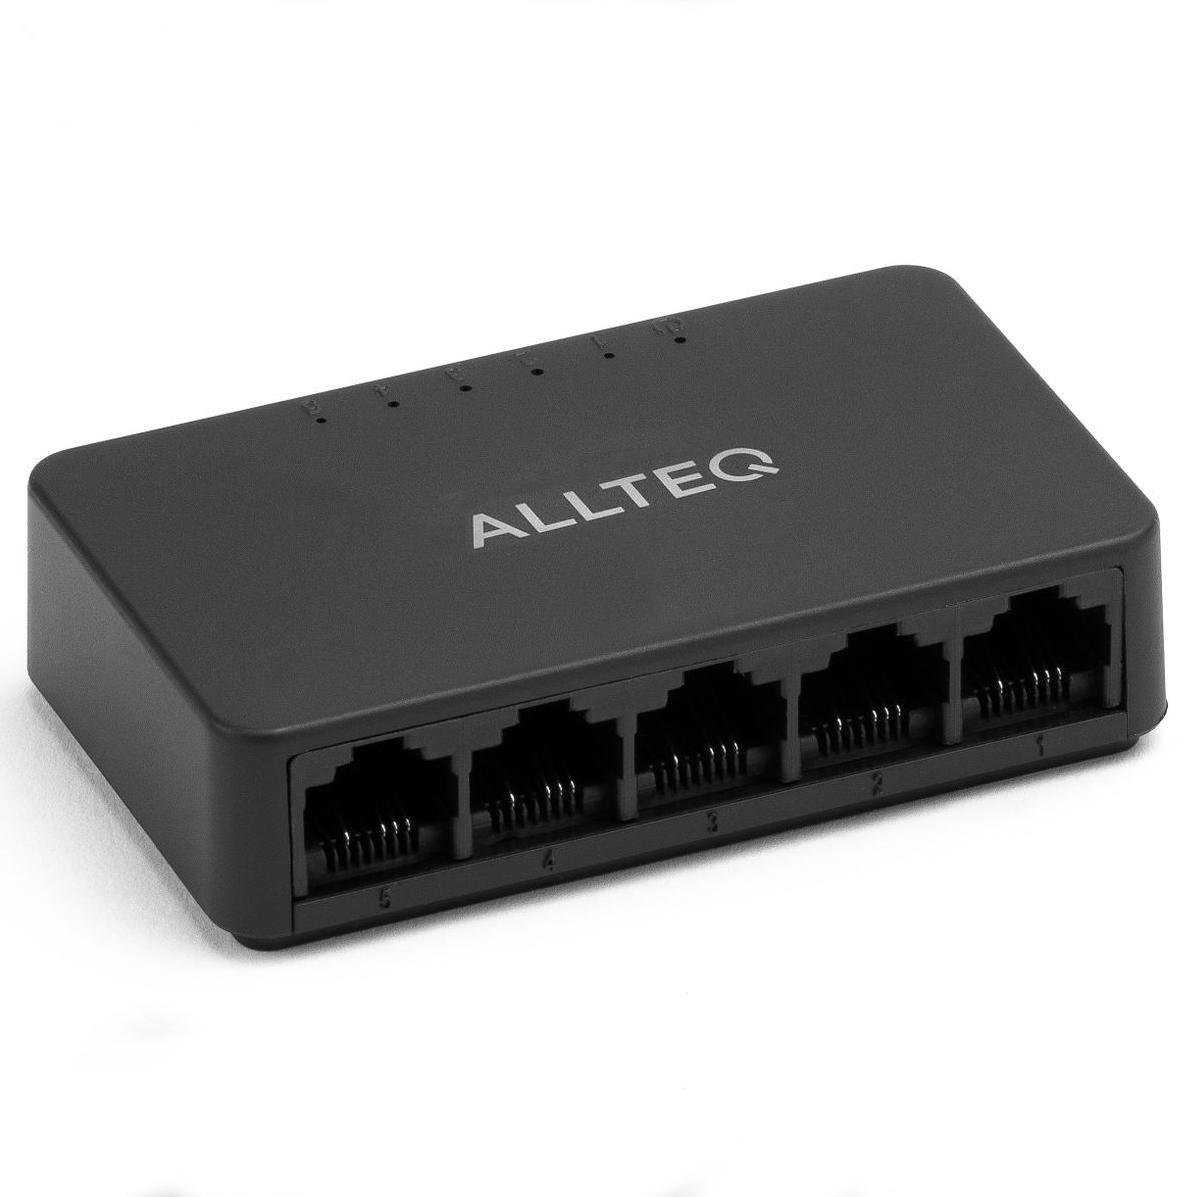 5 Port Netzwerk Switch - Allteq